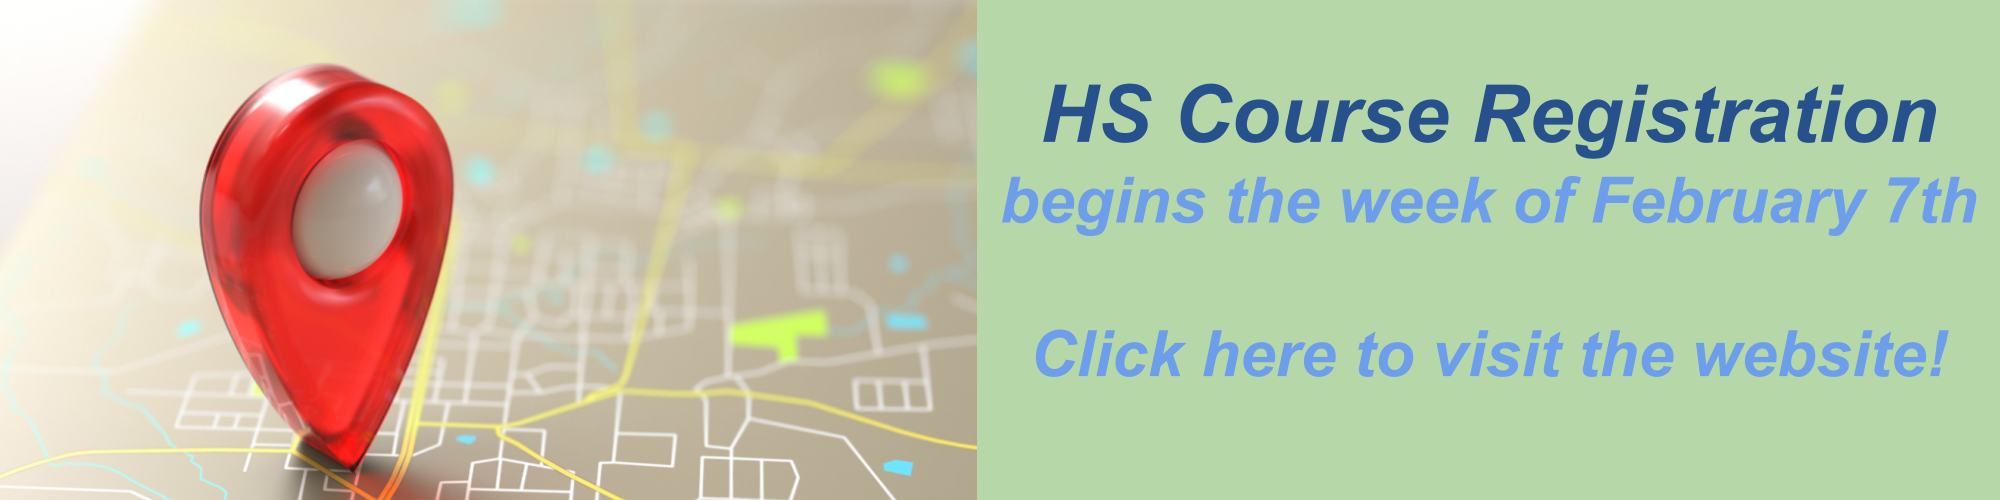 HS Course Registration